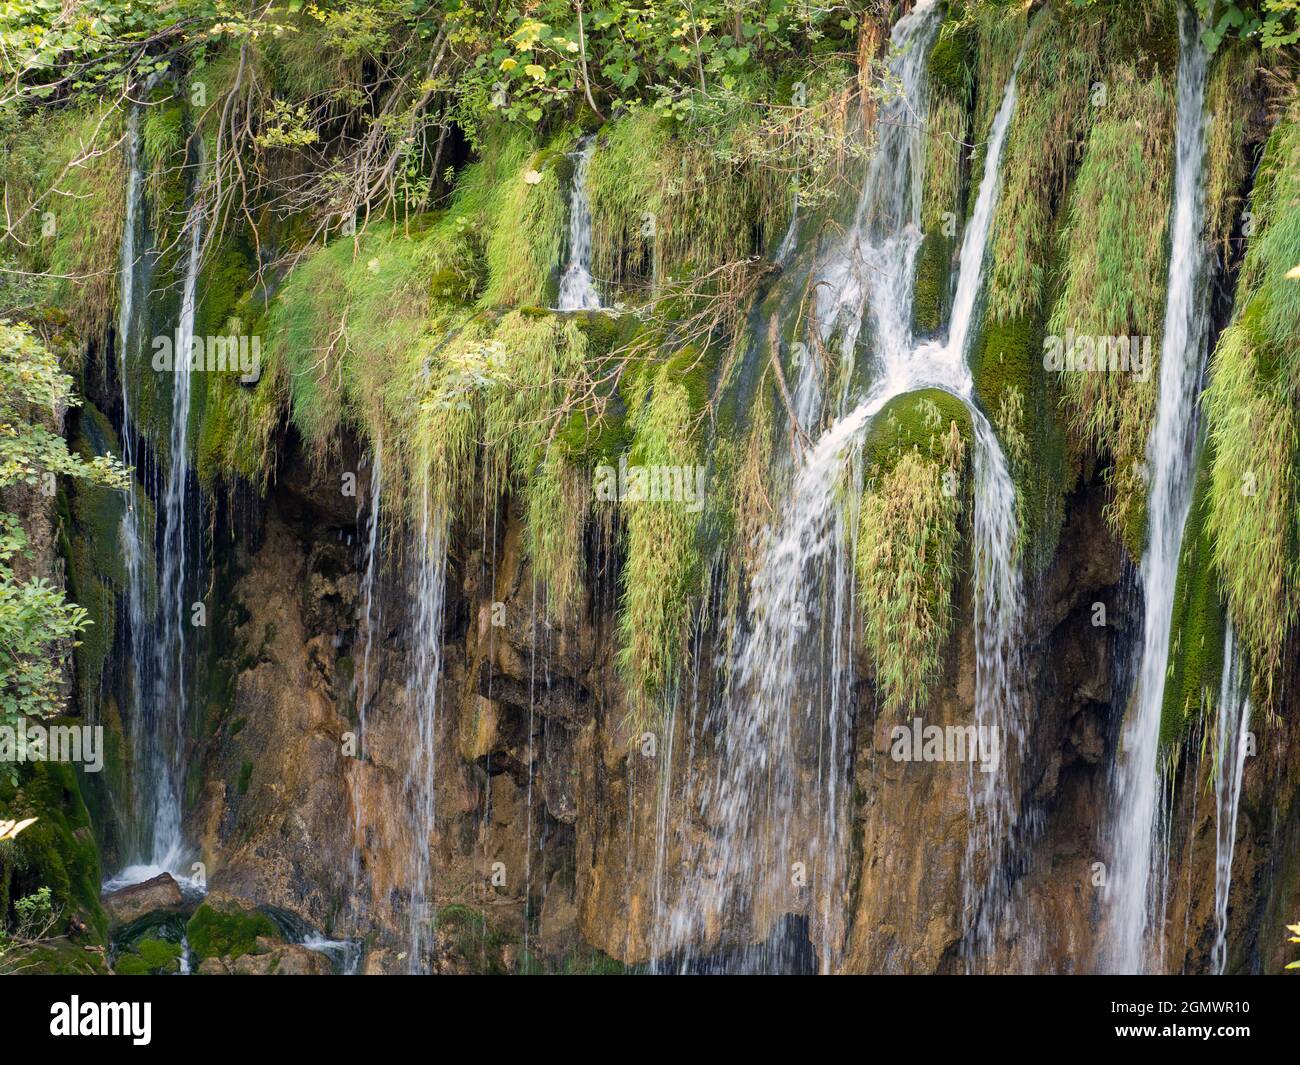 El Parque Nacional de los Lagos de Plitvice, declarado Patrimonio de la Humanidad por la UNESCO, es uno de los parques nacionales más antiguos del sudeste de Europa y el más grande de Croacia. Lo ha hecho Foto de stock